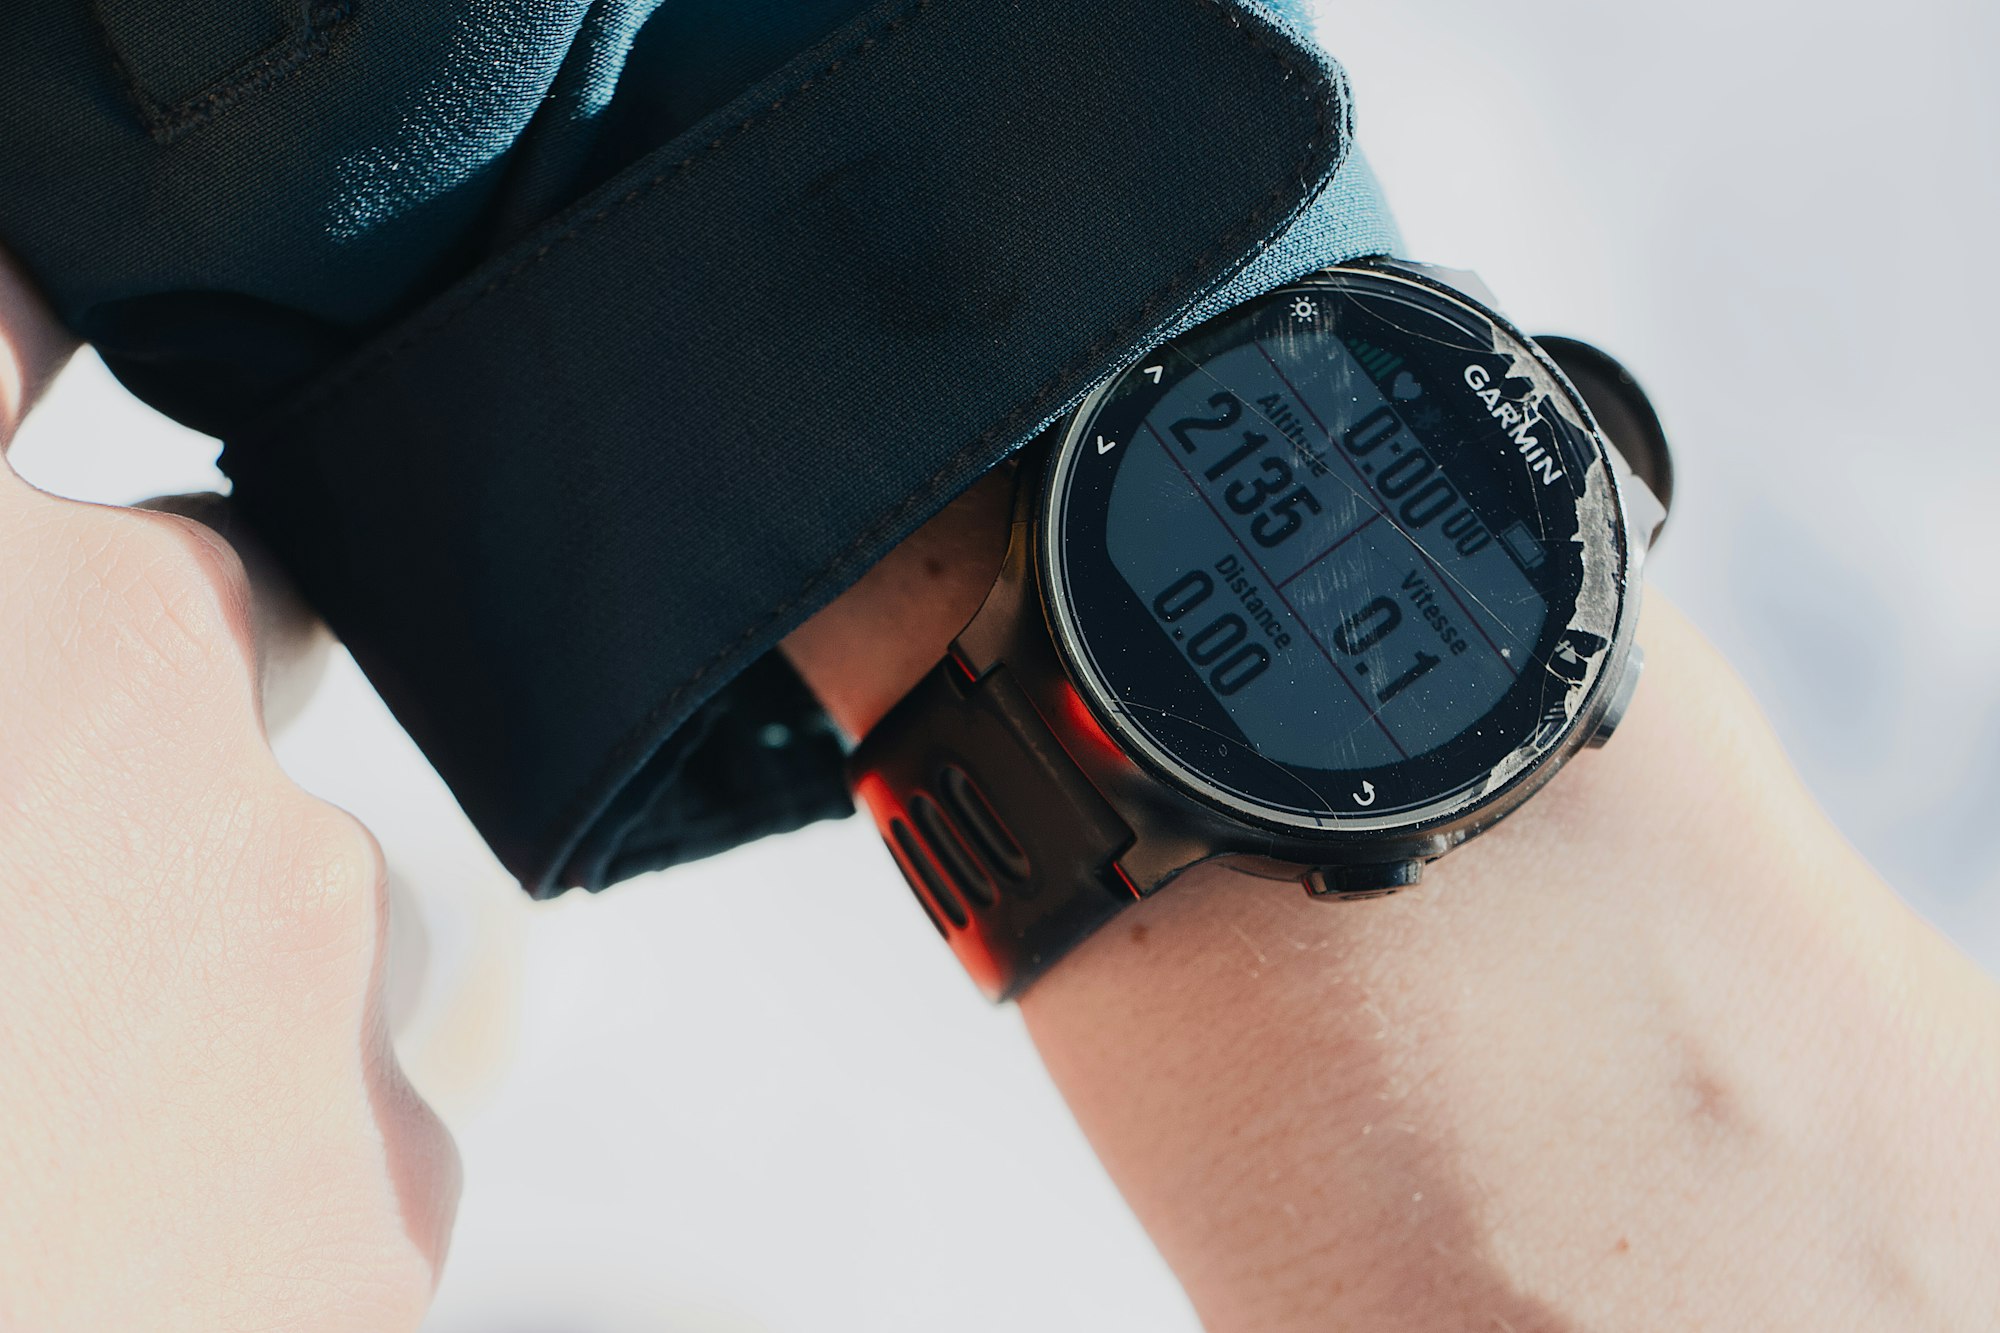 ค่า VO2 ในนาฬิกา Smart Watch เชื่อถือได้มากน้อยแค่ไหน ?